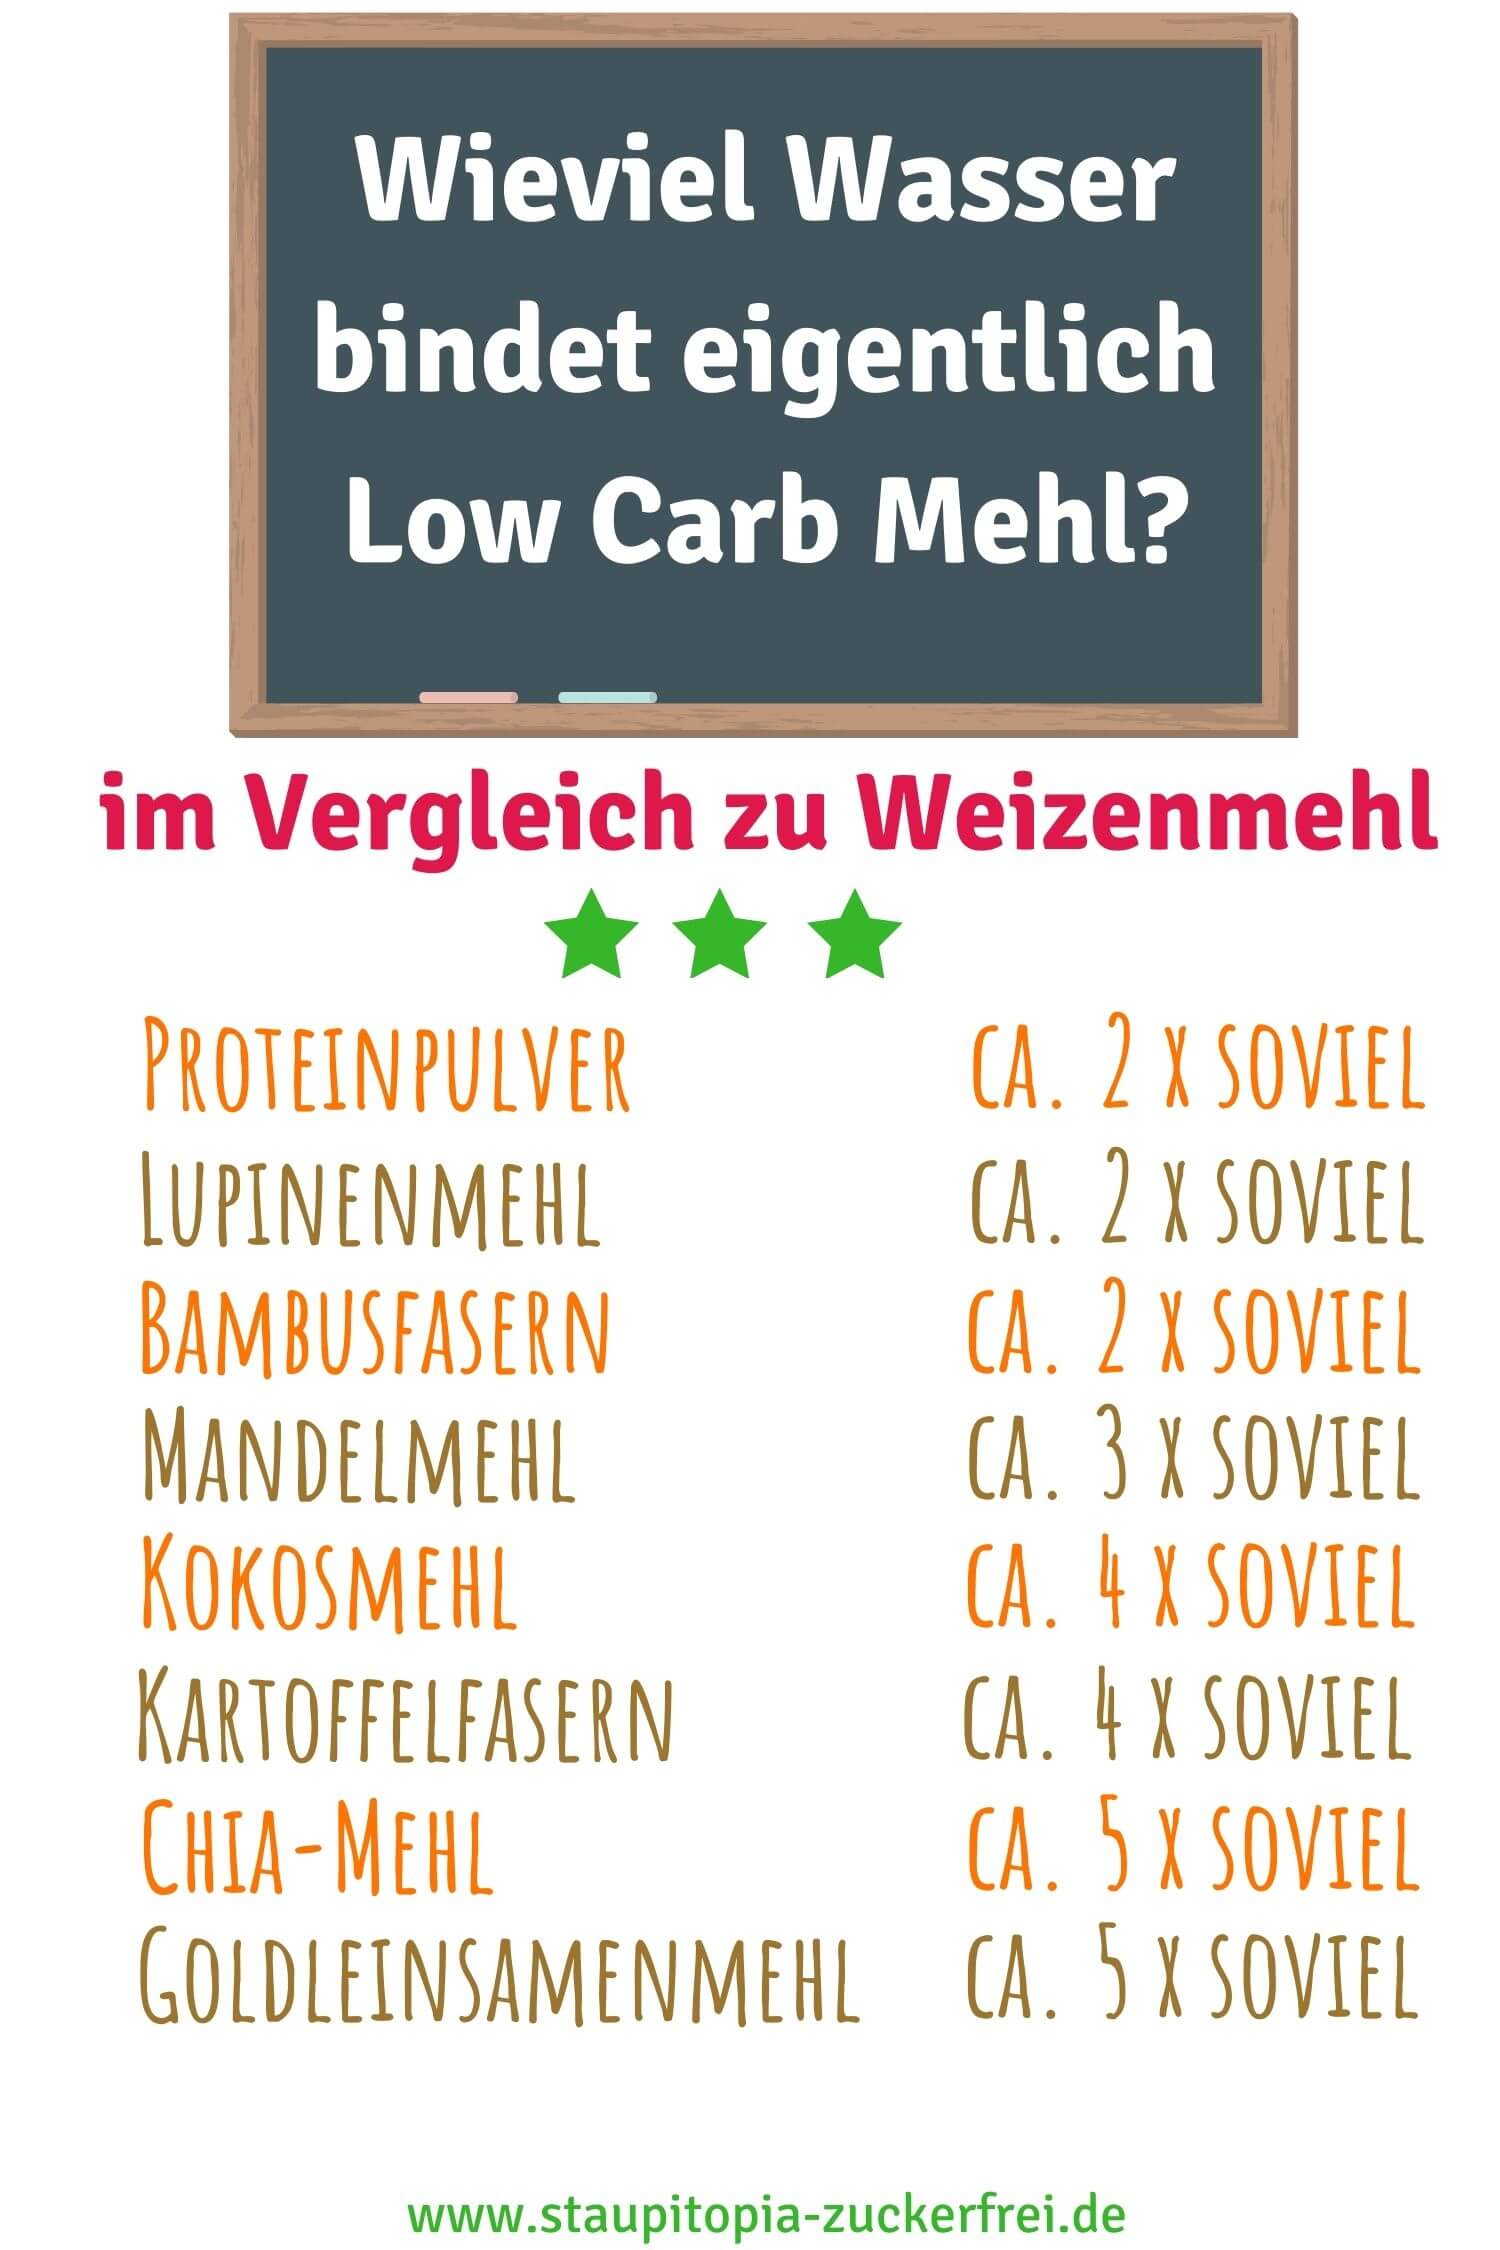 Wieviel Wasser bindet Low Carb Mehl im Vergleich zu Weizenmehl?